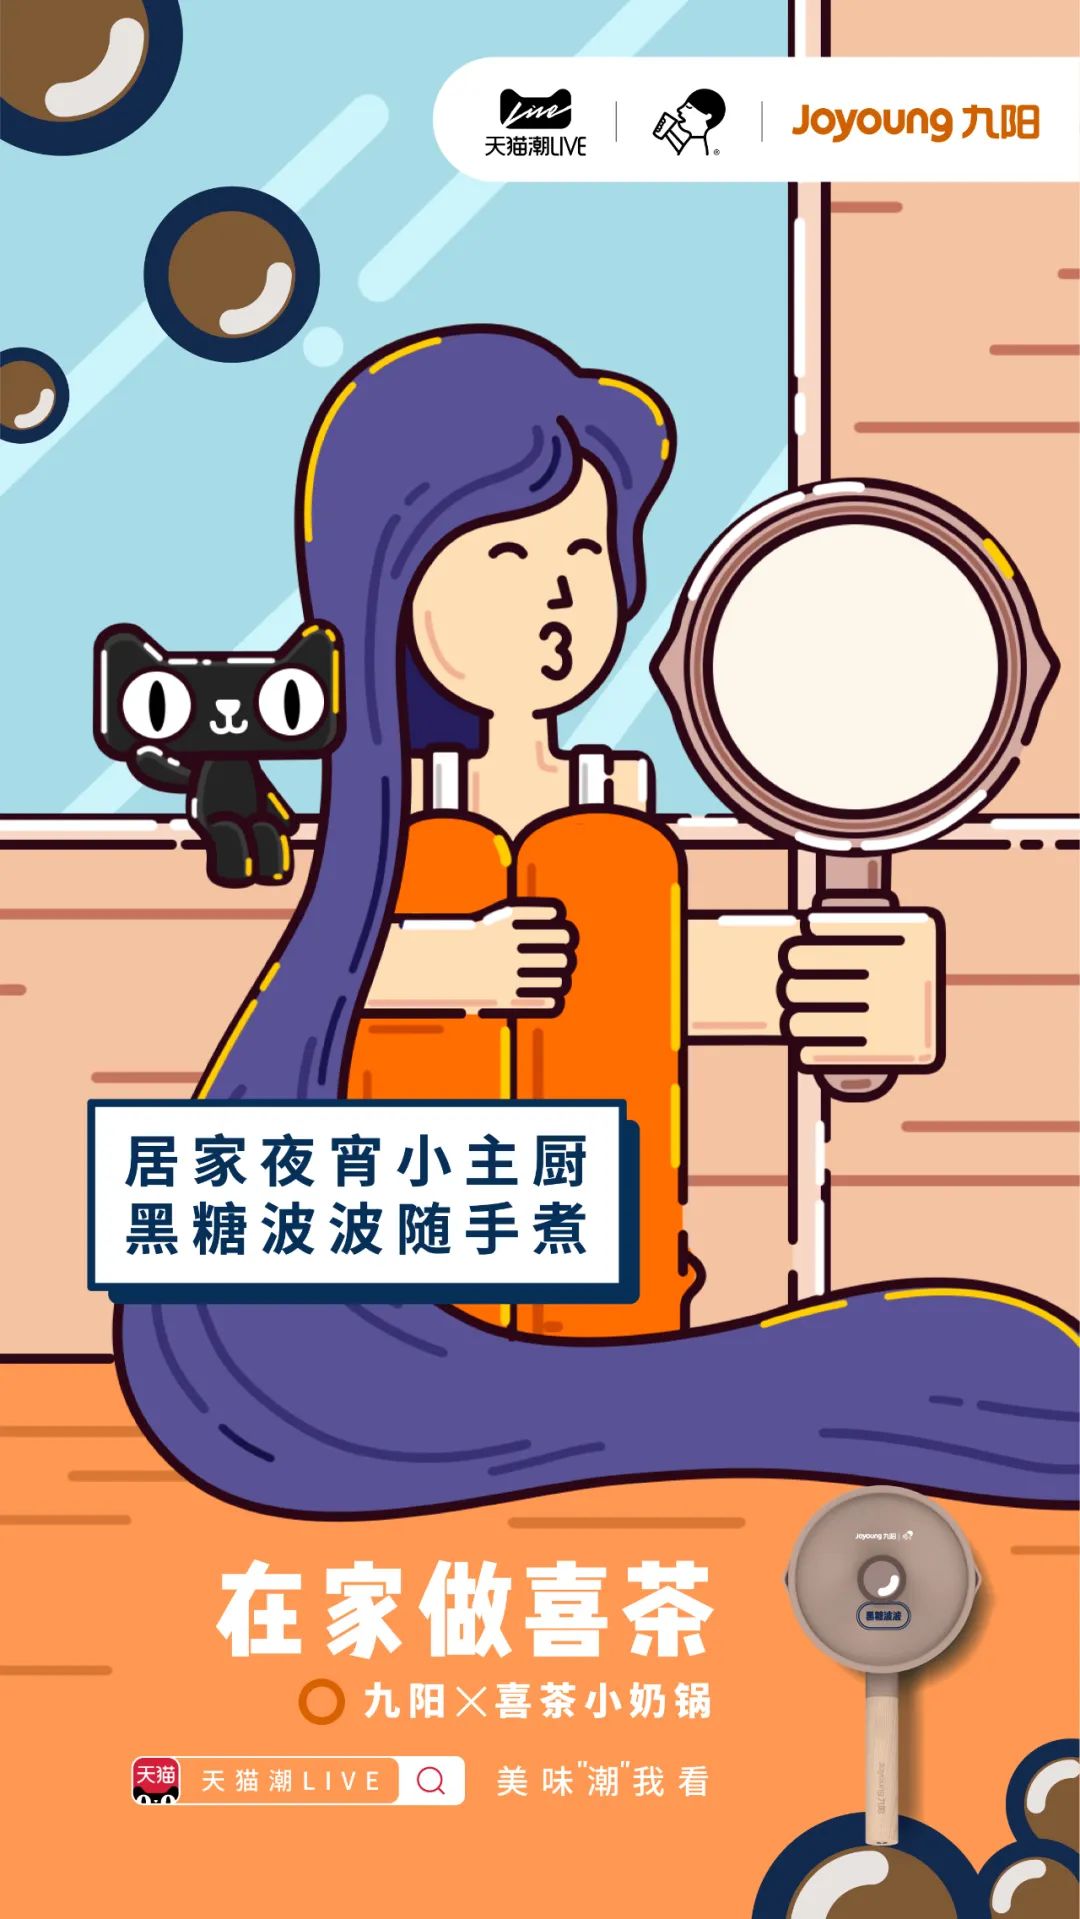 九阳喜茶联名合作品牌策划营销海报设计